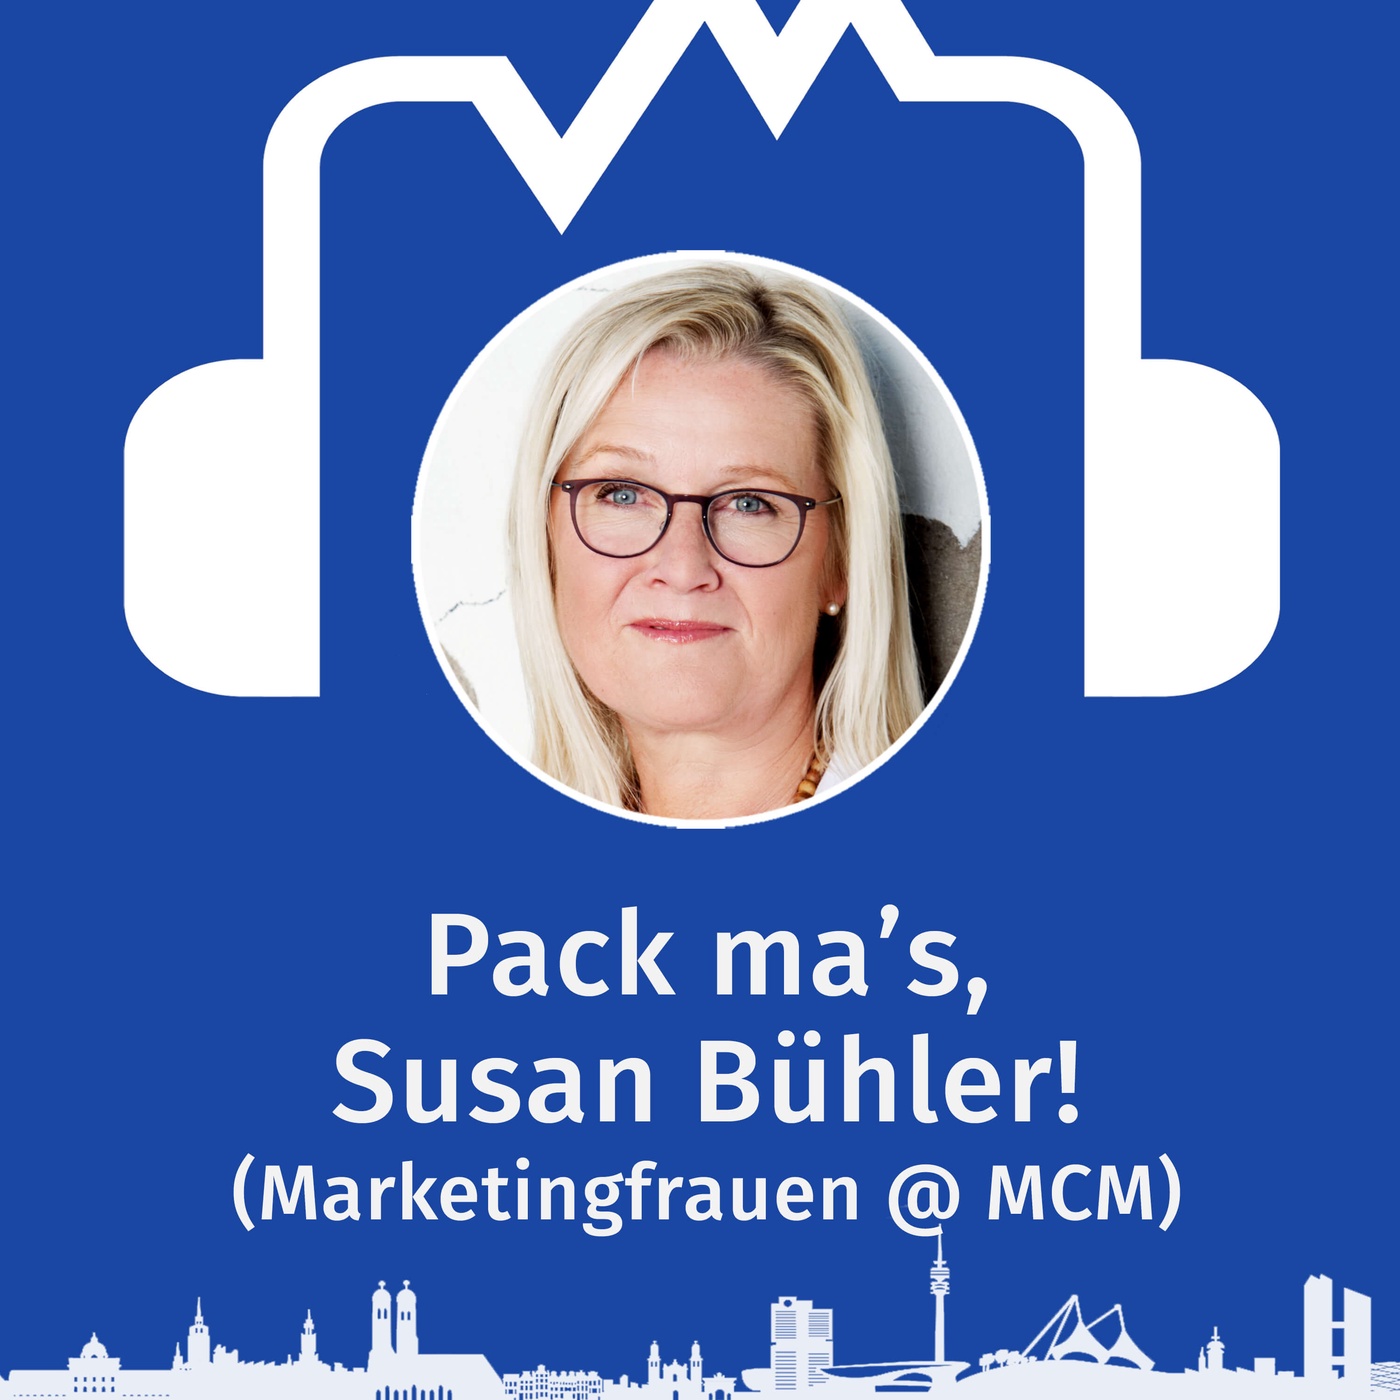 Pack ma’s, Susan Bühler! Was die Marketingfrauen im Marketing Club planen